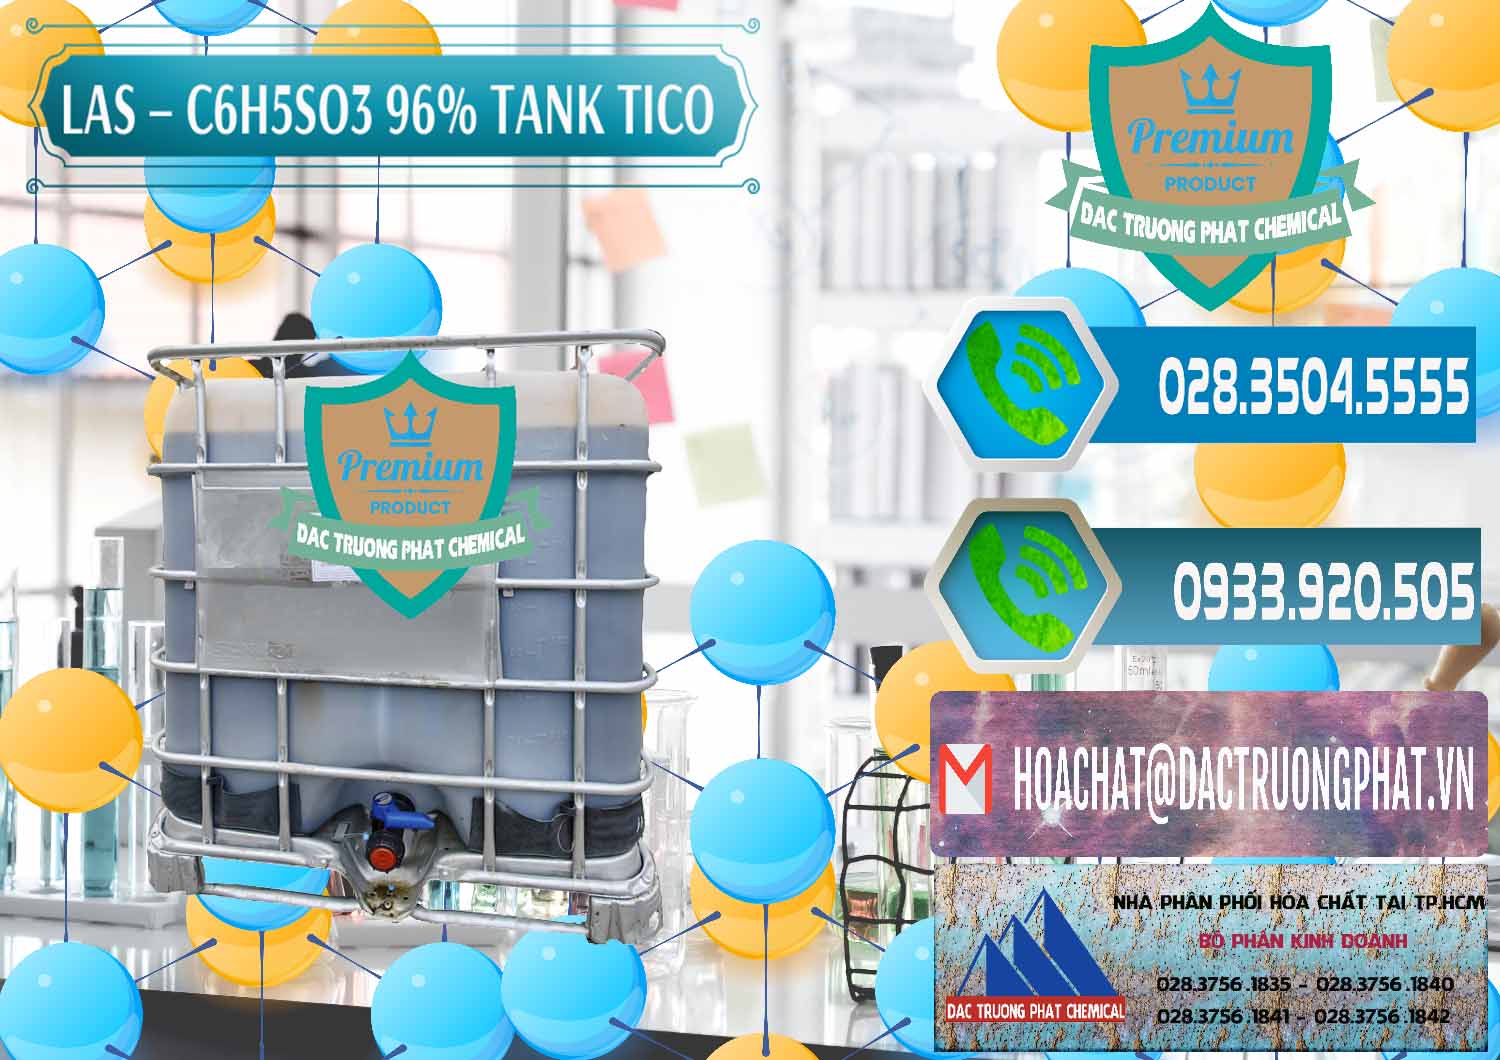 Đơn vị nhập khẩu - bán Chất tạo bọt Las P Tico Tank IBC Bồn Việt Nam - 0488 - Bán _ phân phối hóa chất tại TP.HCM - congtyhoachat.net